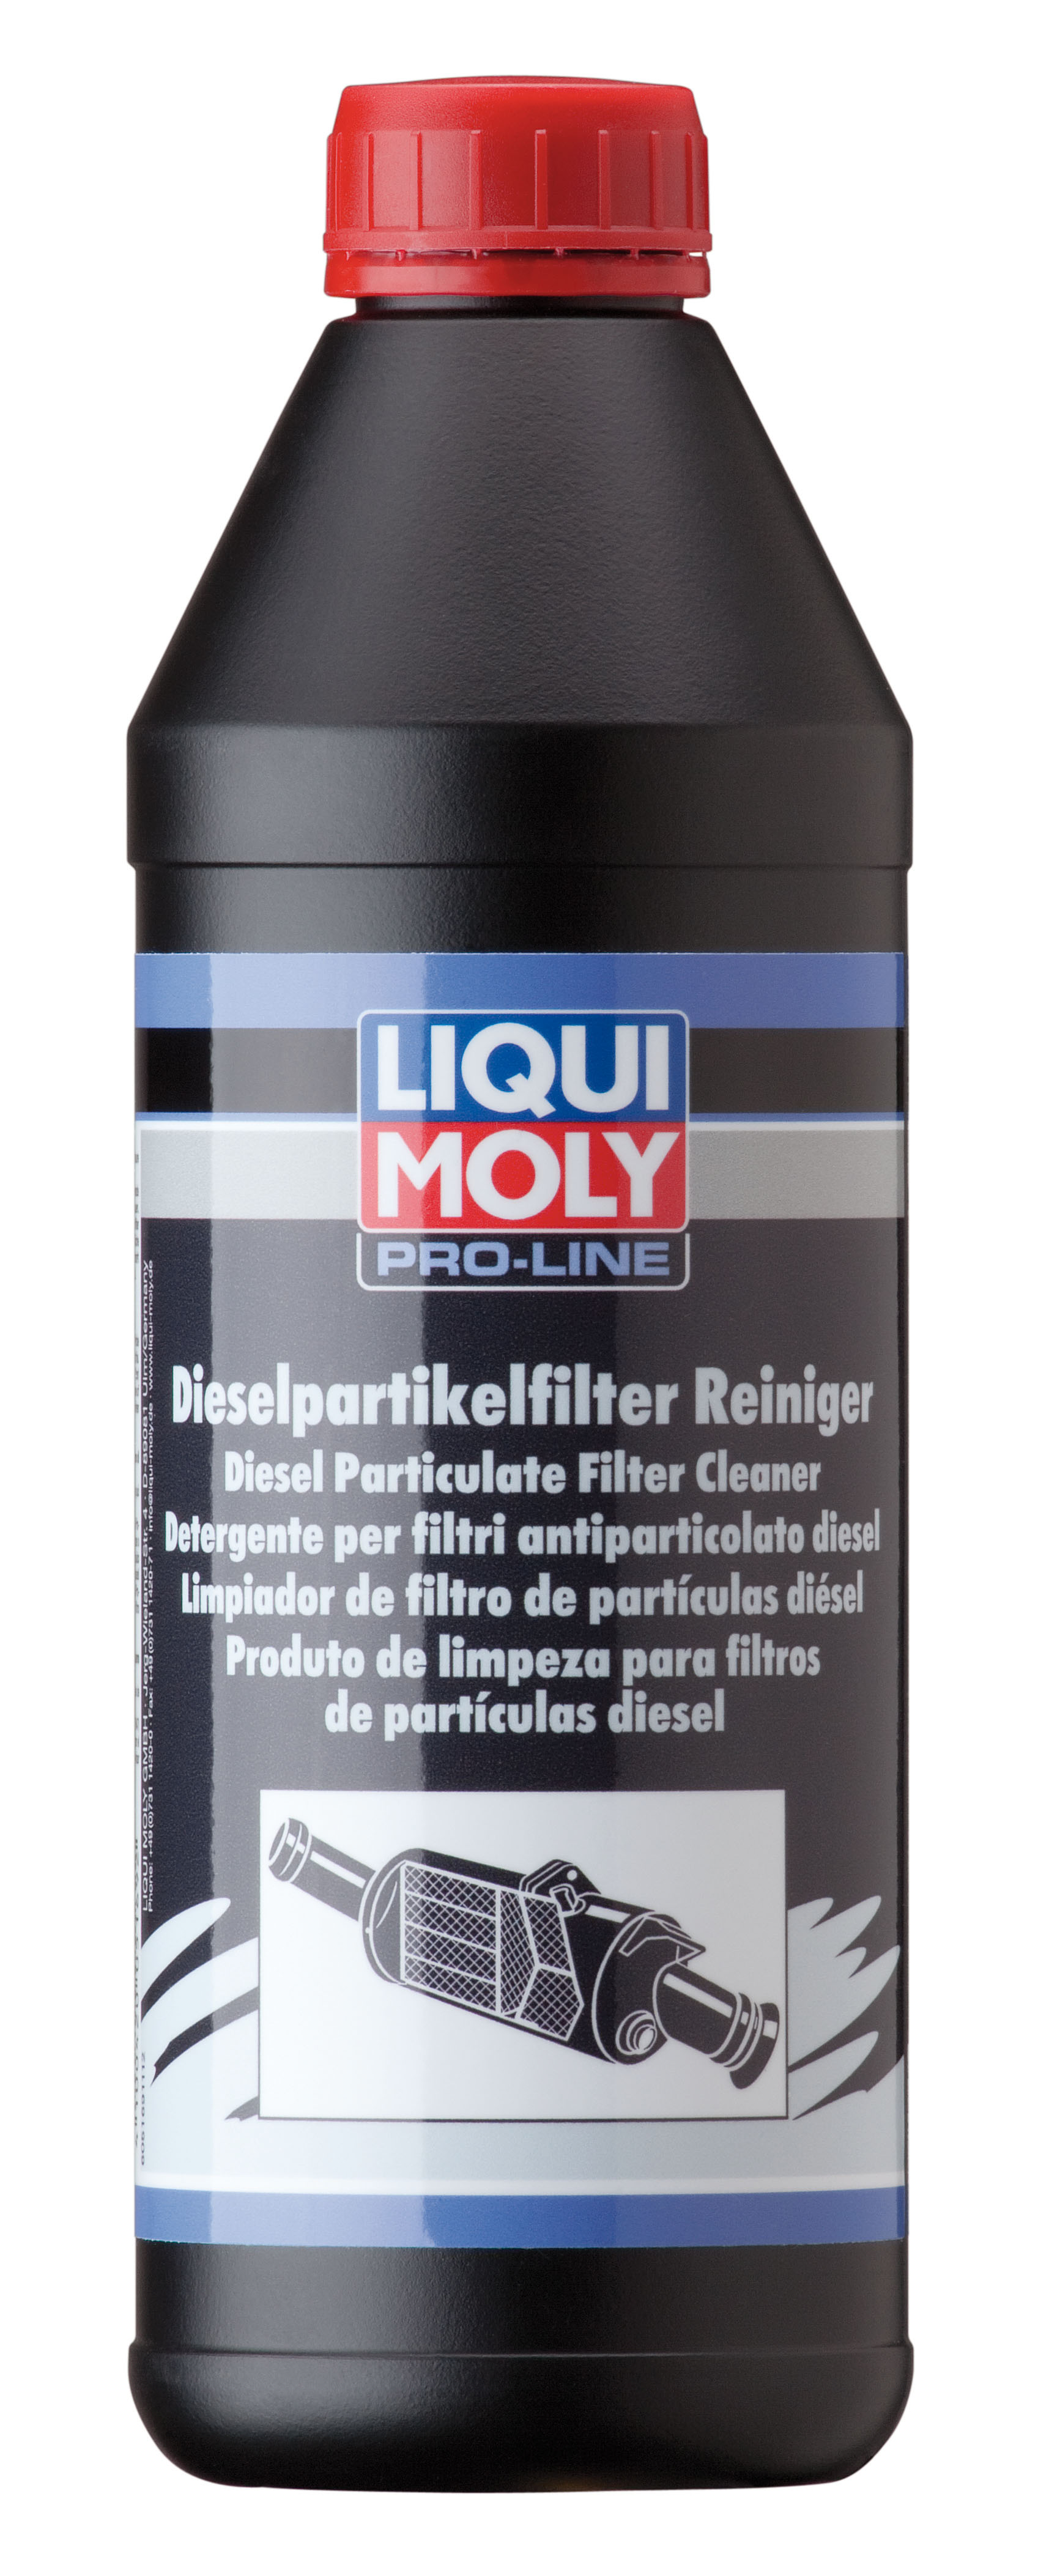 Очиститель диз.сажевого фильтра Профессиональный Pro-Line Diesel Partikelfilter Reiniger, 1л - Liqui Moly 5169